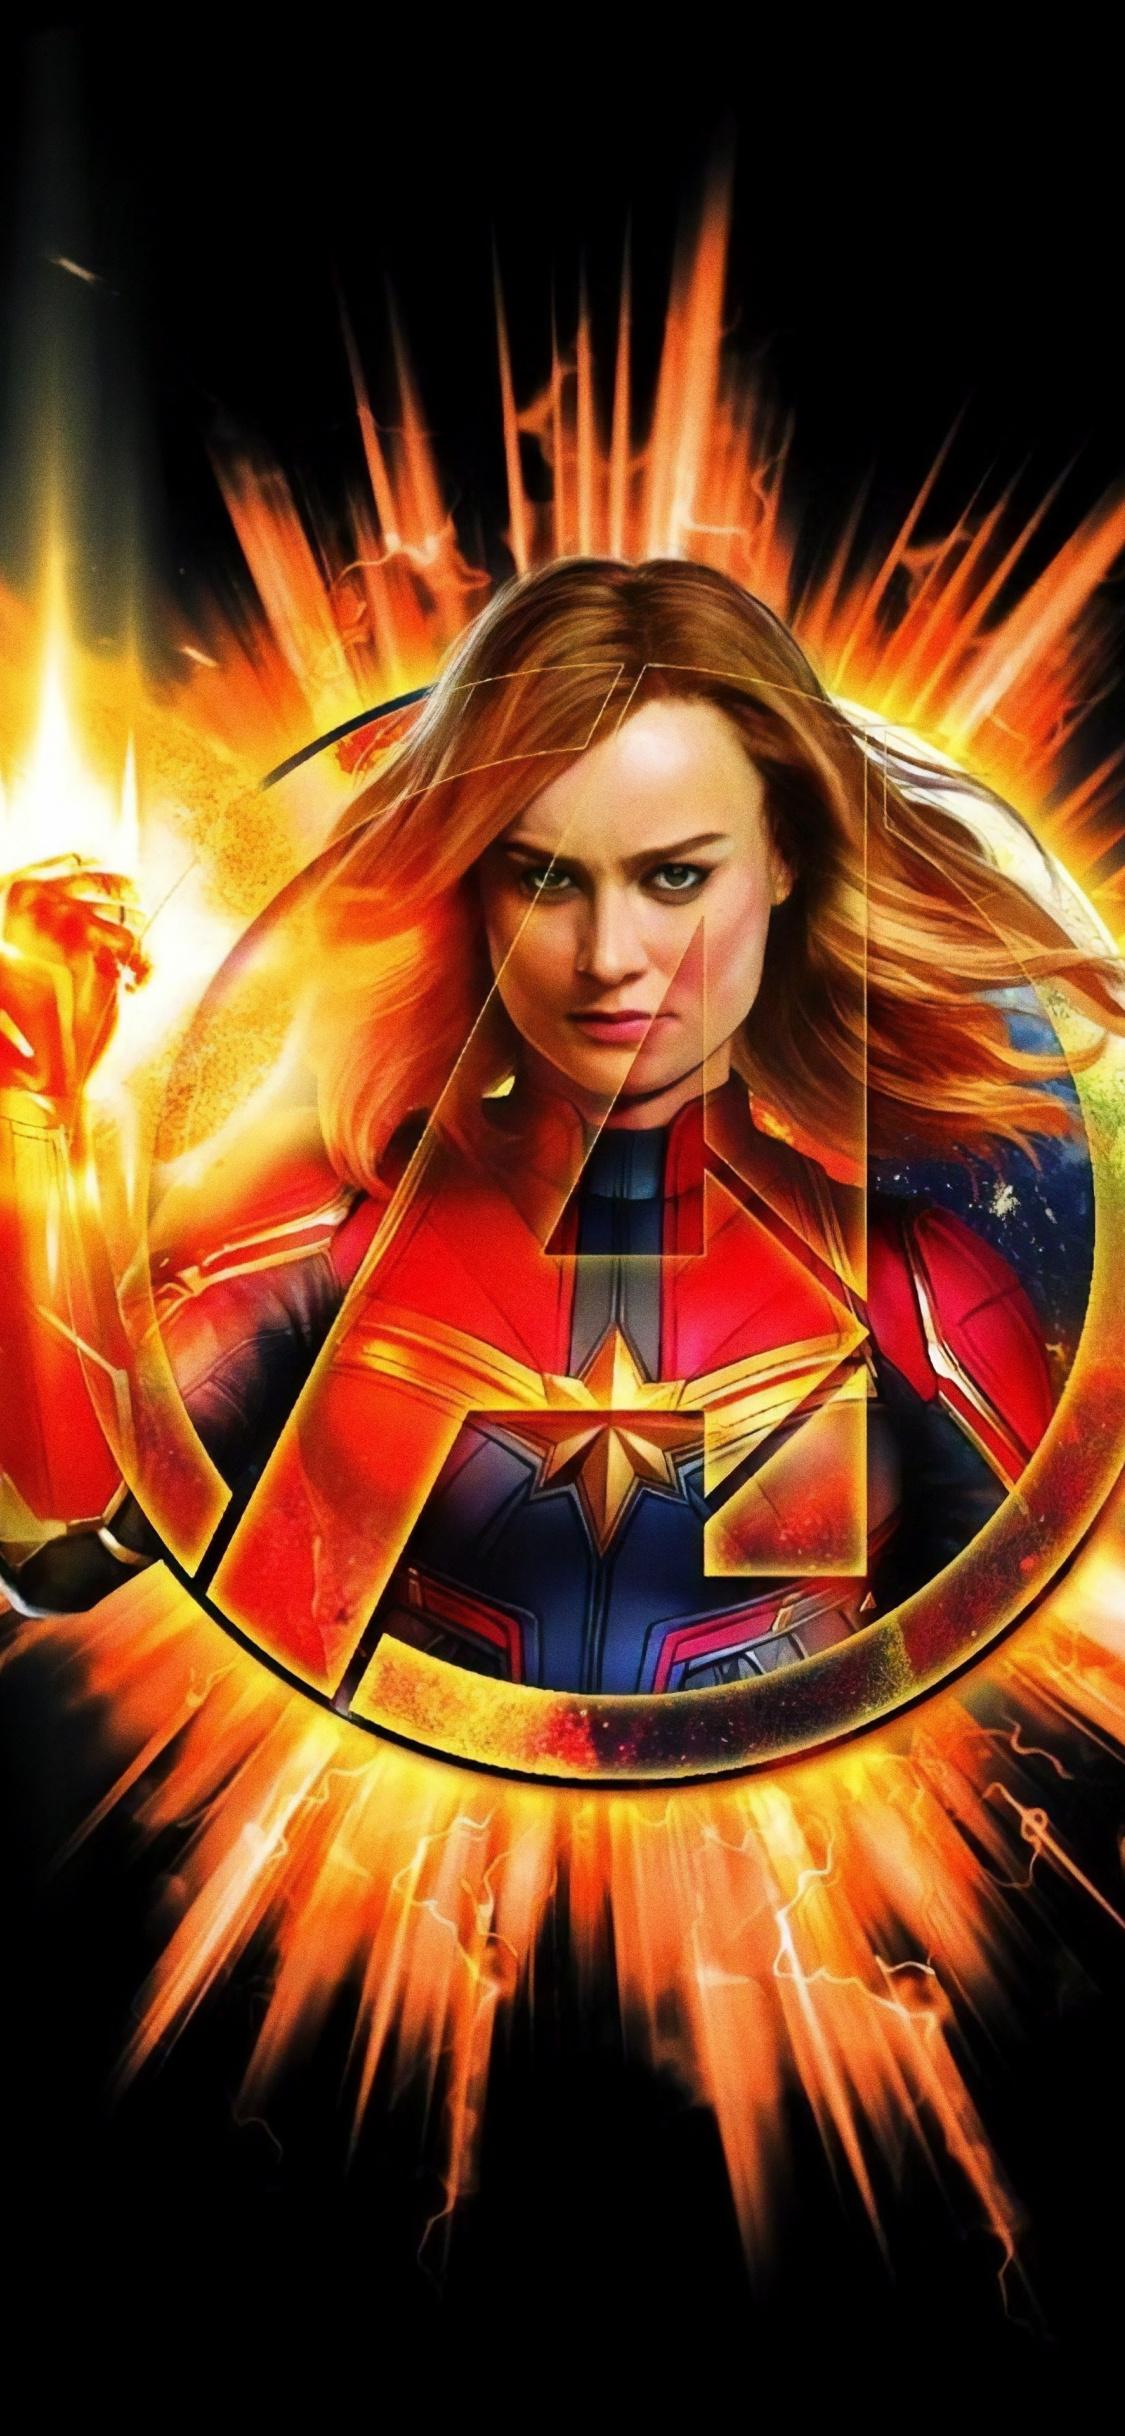 Download 1125x2436 wallpaper avengers: endgame, captain marvel